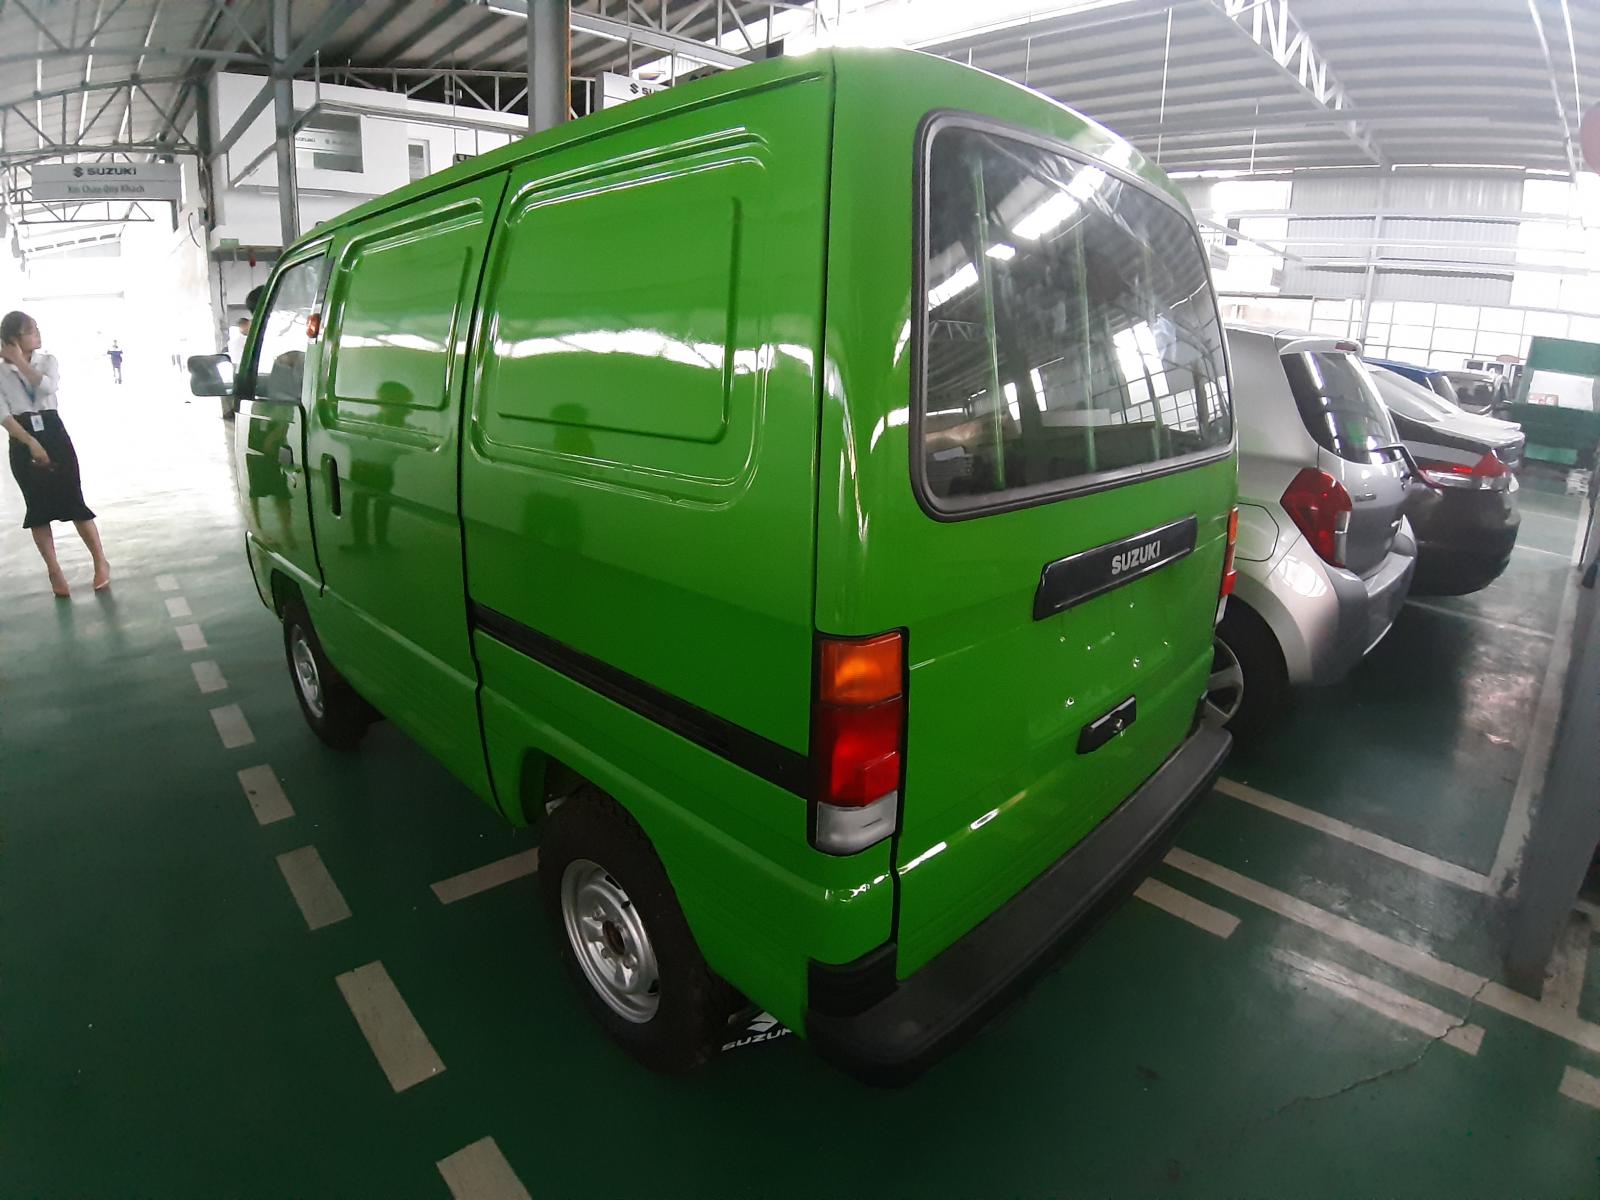 Suzuki Blind Van 2019 - Xe tải chạy giờ cấm giá hạt dẻ